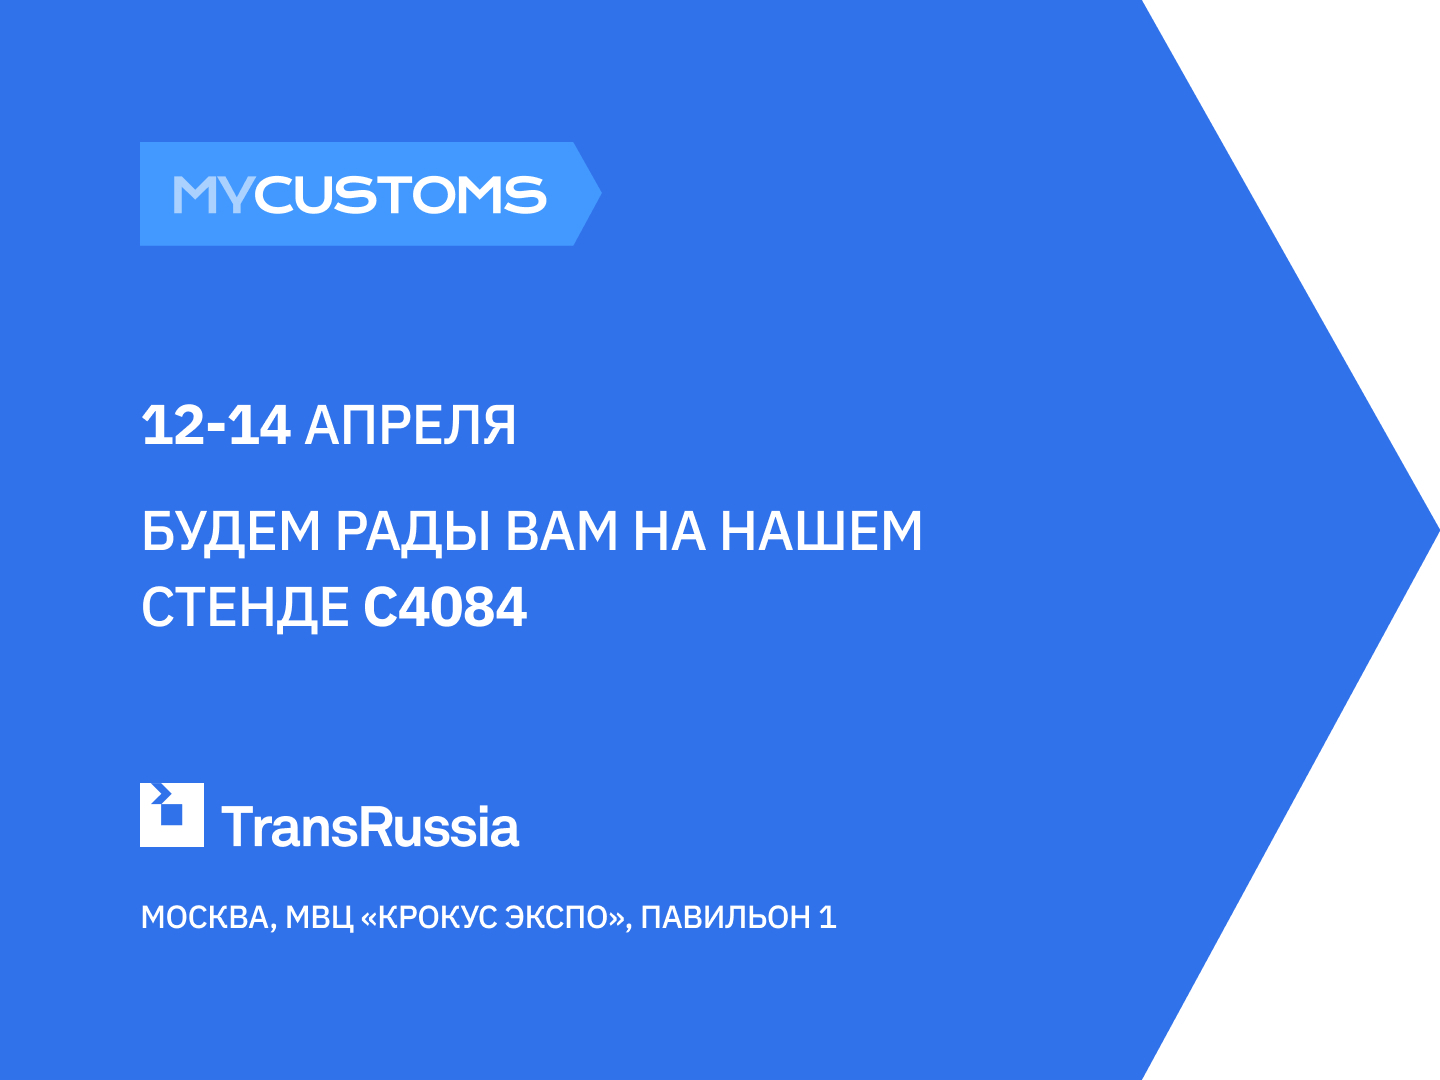 MyCustoms Will Participate in TransRussia 2022